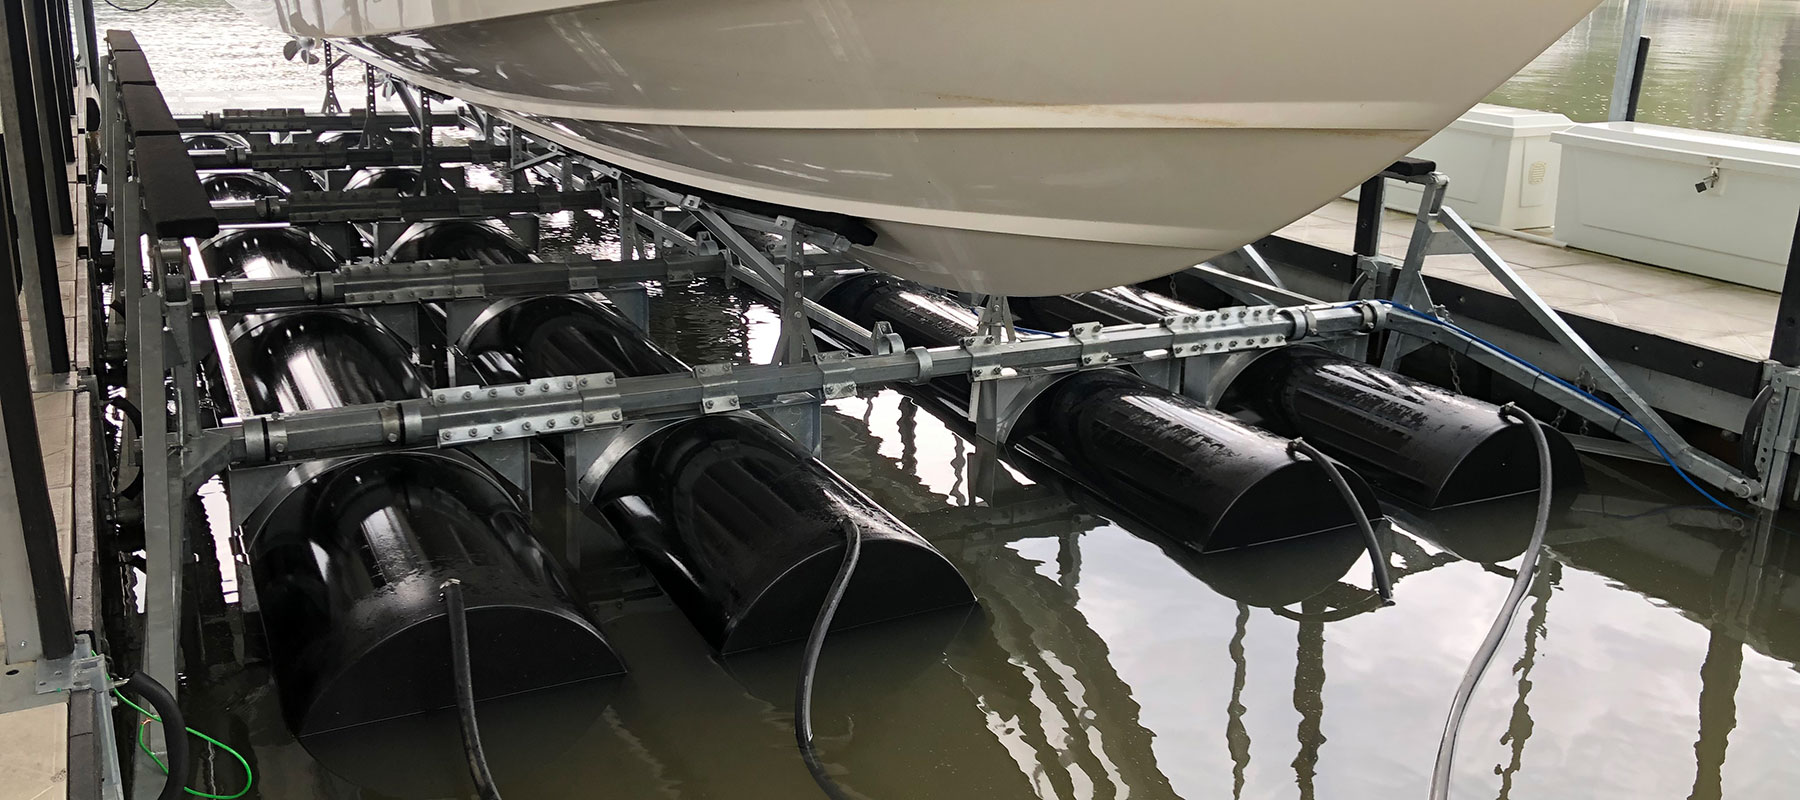 38,000 lb boat lift at the Lake of the Ozarks